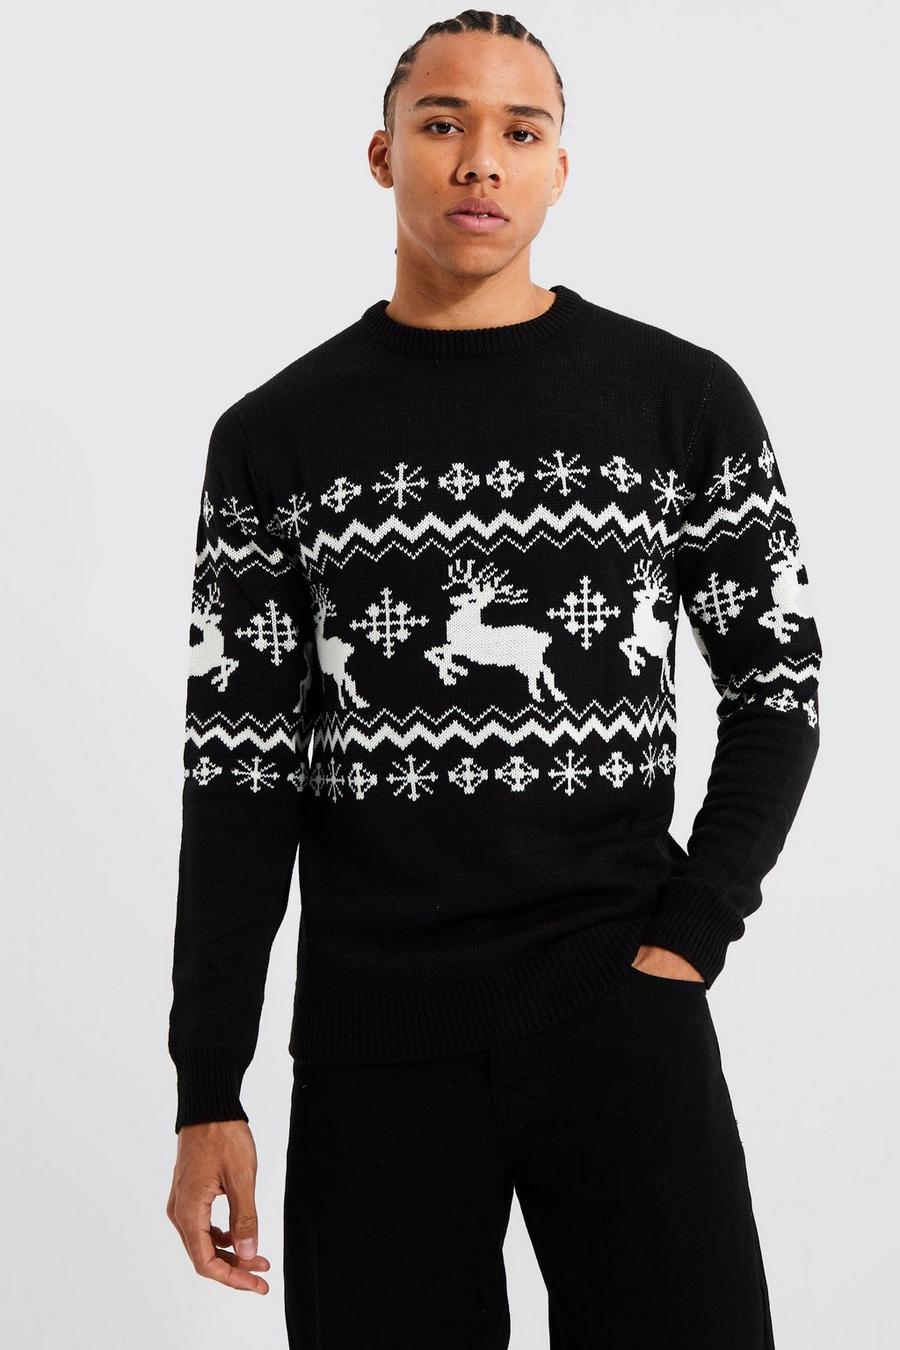 שחור סוודר לחג המולד עם פאנל אייל הצפון בסגנון פייר אייל, לגברים גבוהים